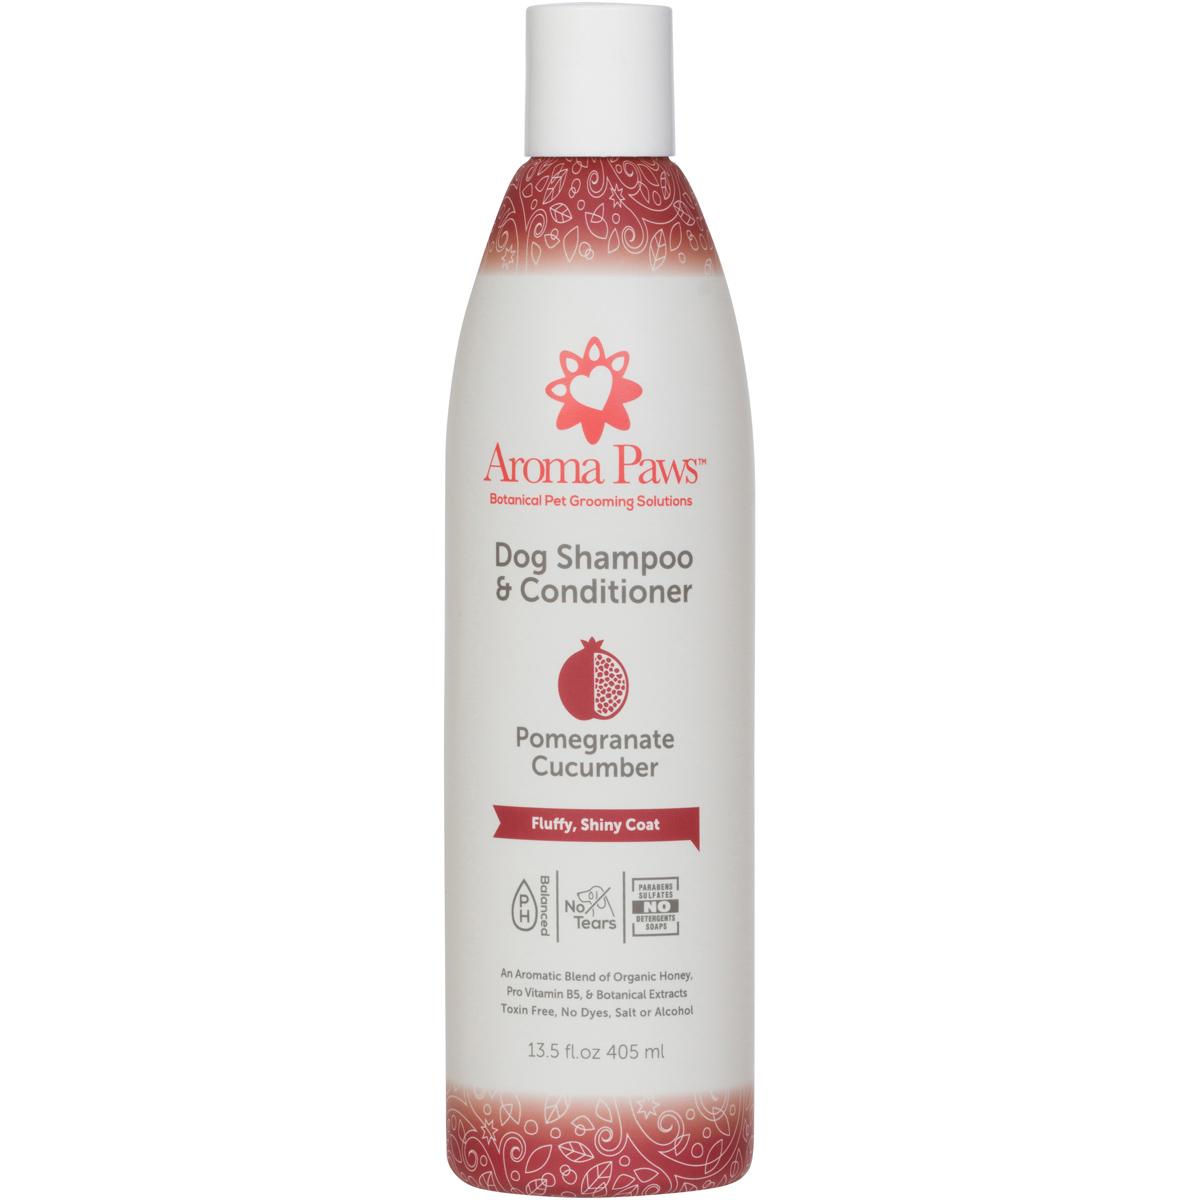 Aroma Paws Pomegranate Cucumber Dog Shampoo & Conditioner, 13.5-oz